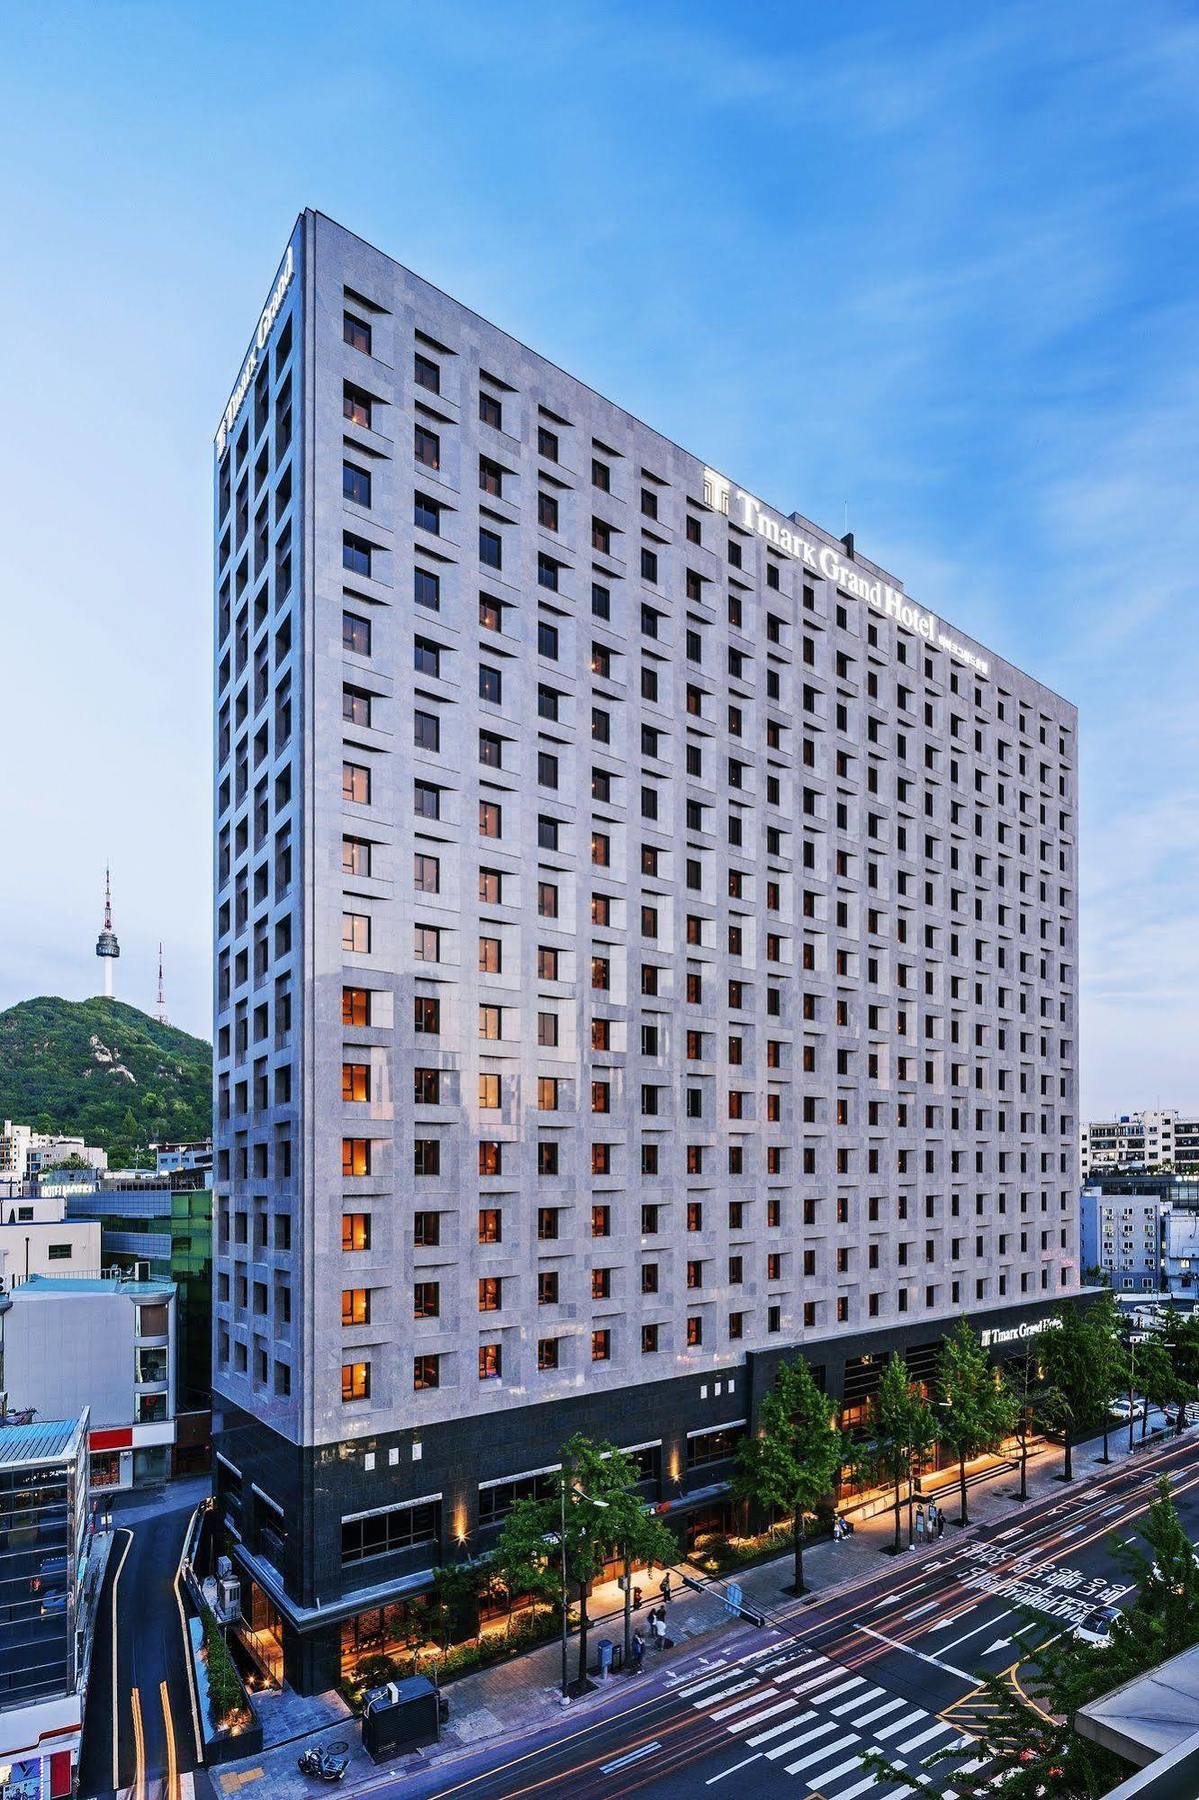 סיאול Tmark Grand Hotel Myeongdong מראה חיצוני תמונה